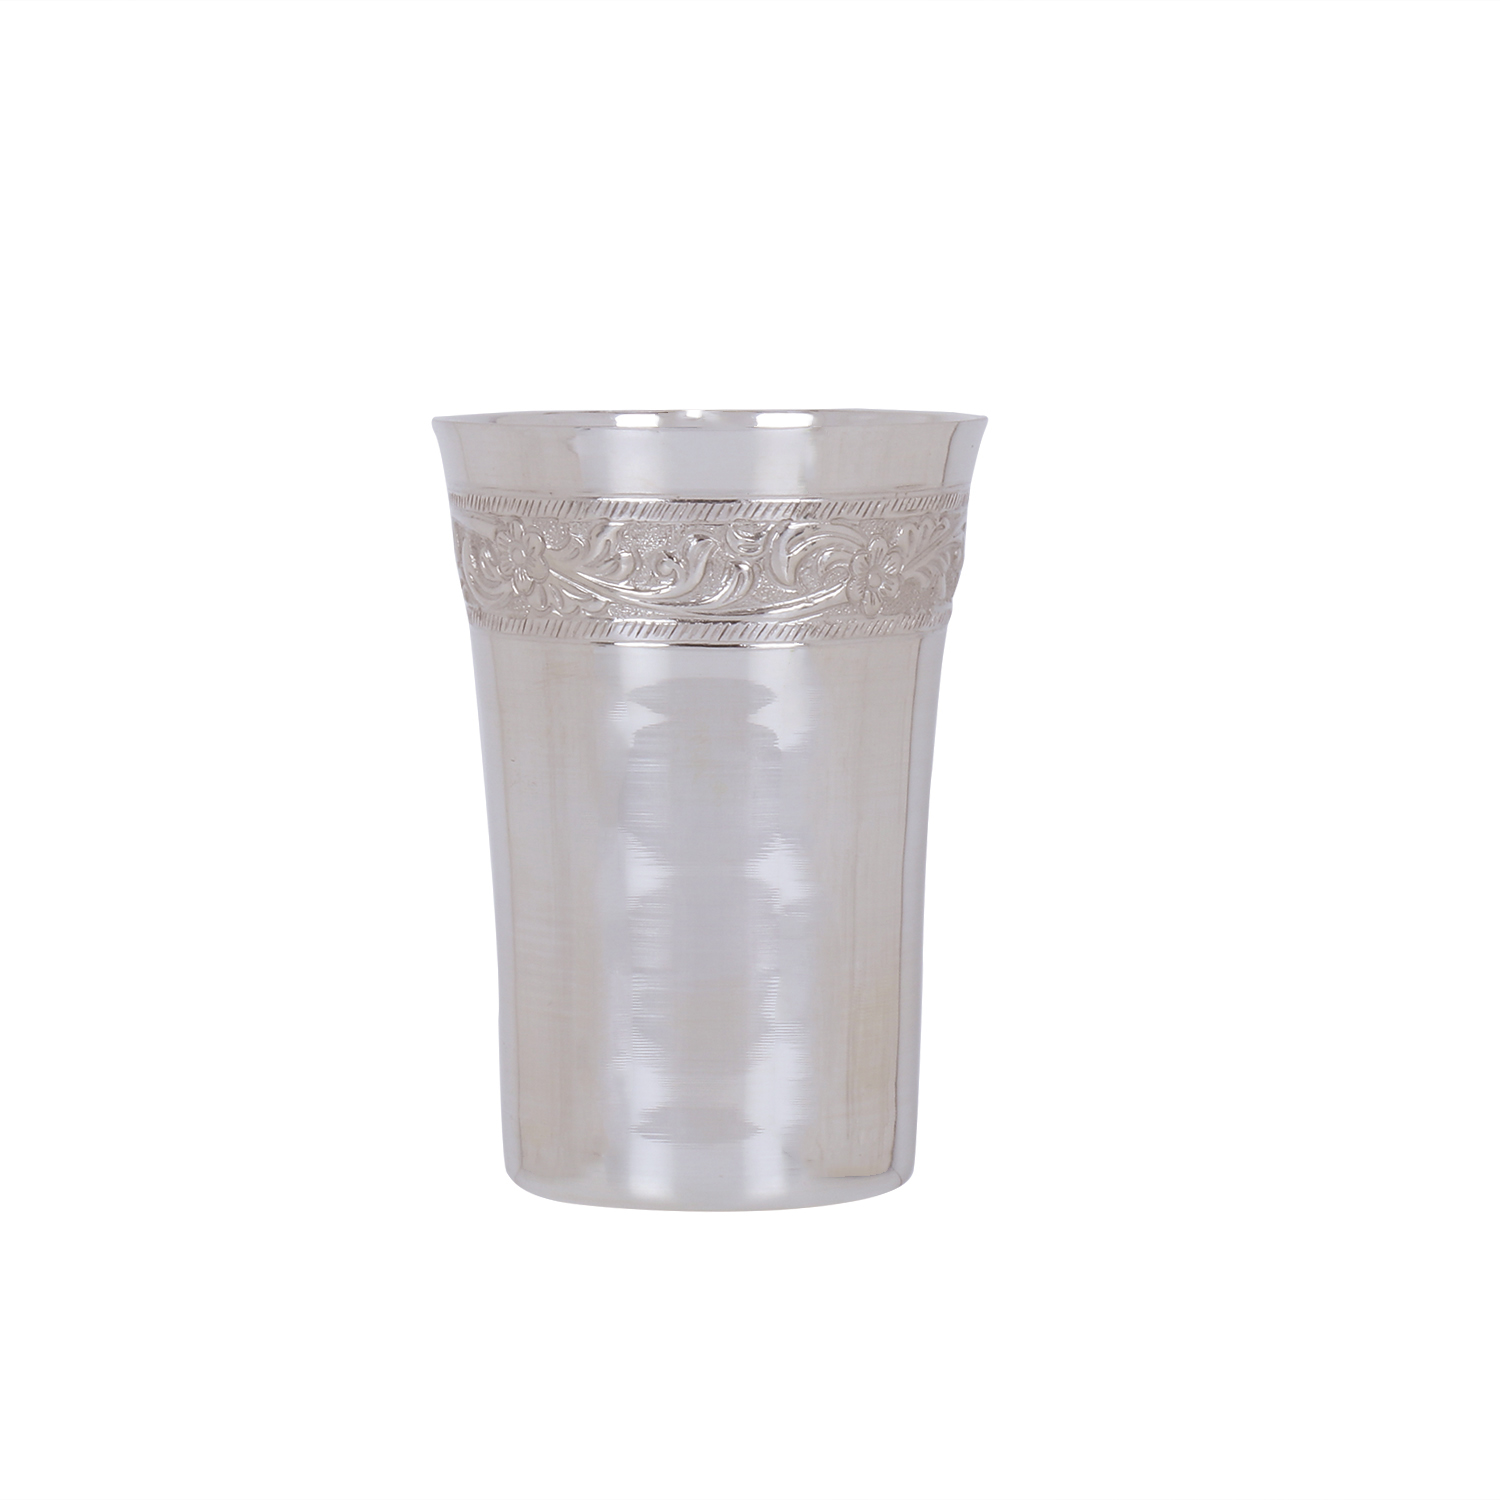 OSASGN200 Glass Nakshi 200 ml in Silver by Osasbazaar Main